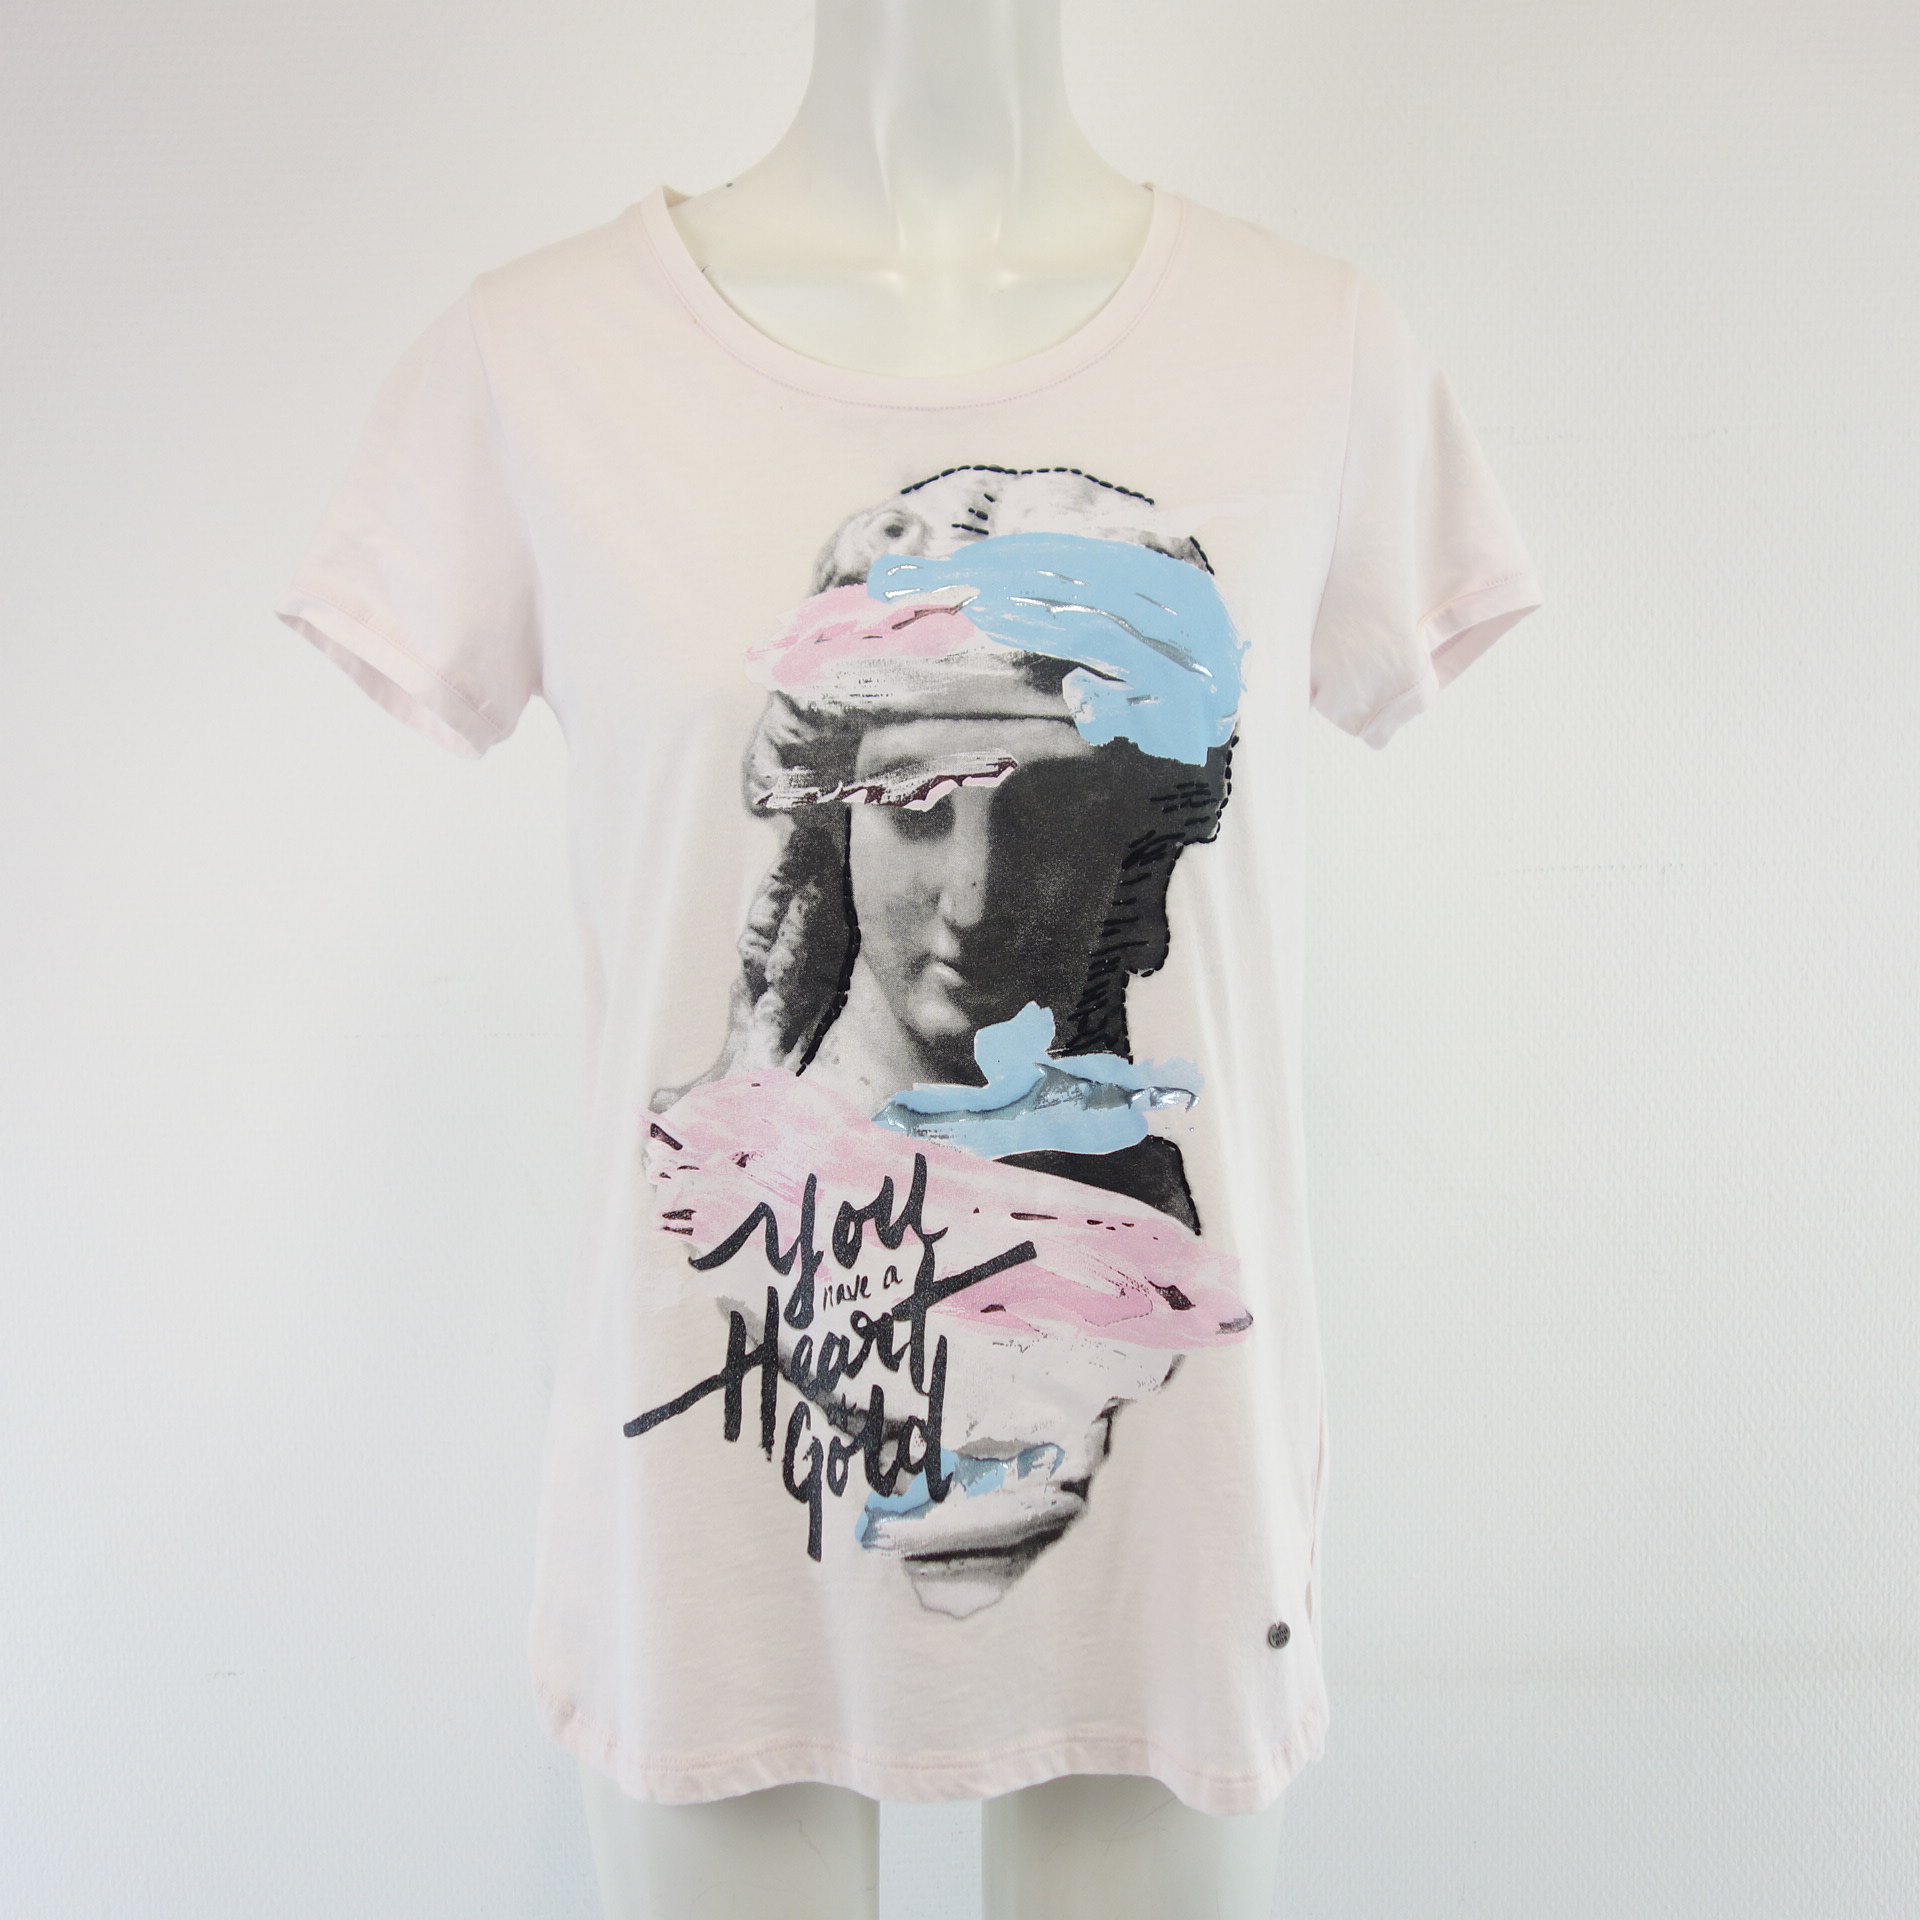 FROBOX by Princess Damen T-Shirt T Shirt Oberteil Rose Print 100% Baumwolle Größe 36